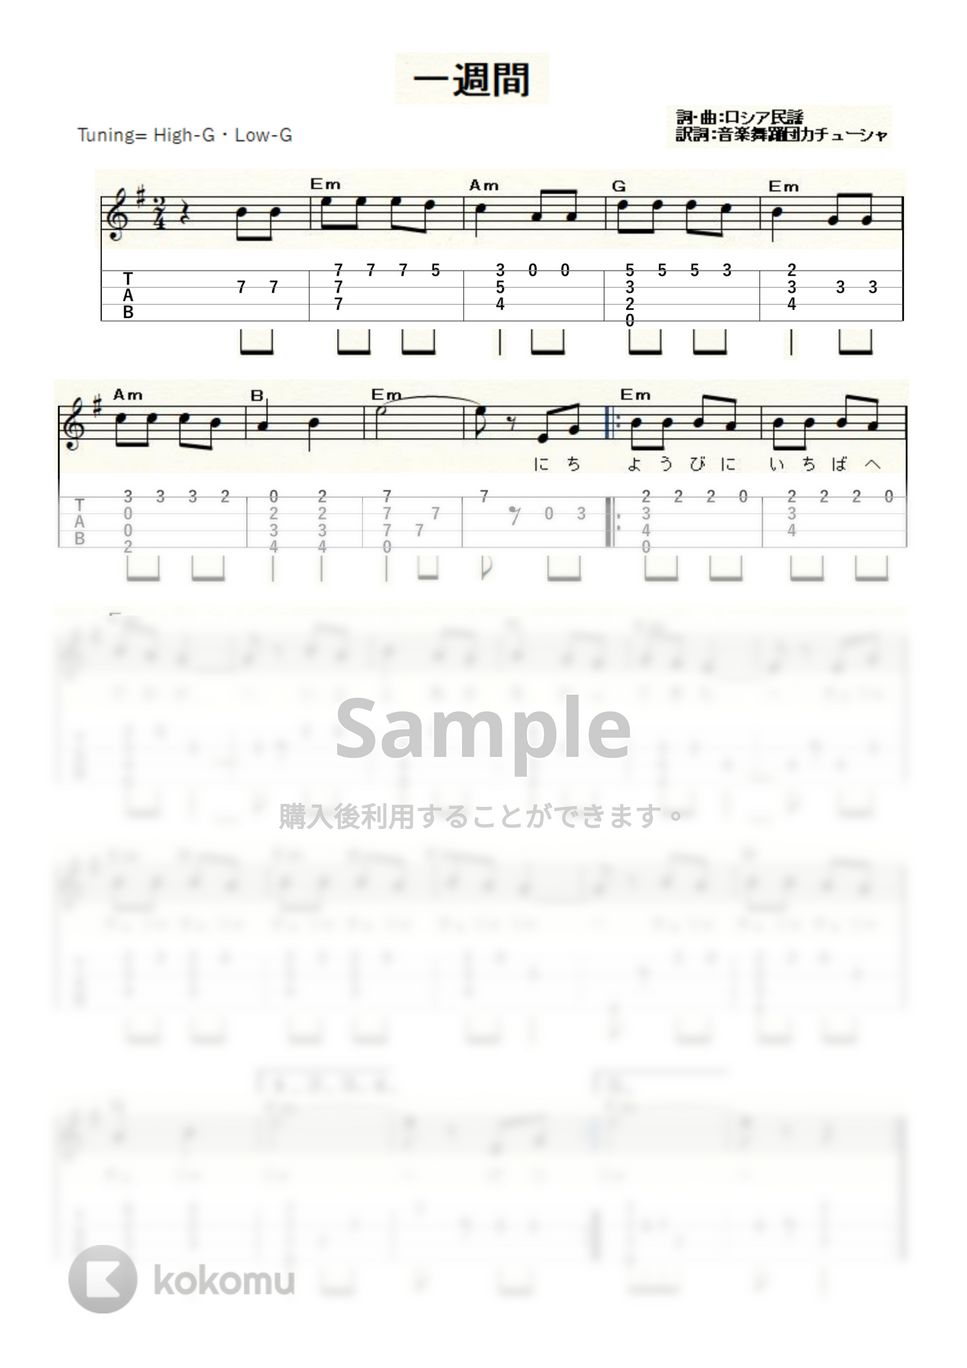 一週間 (ｳｸﾚﾚｿﾛ / High-G・Low-G / 初級～中級) by ukulelepapa